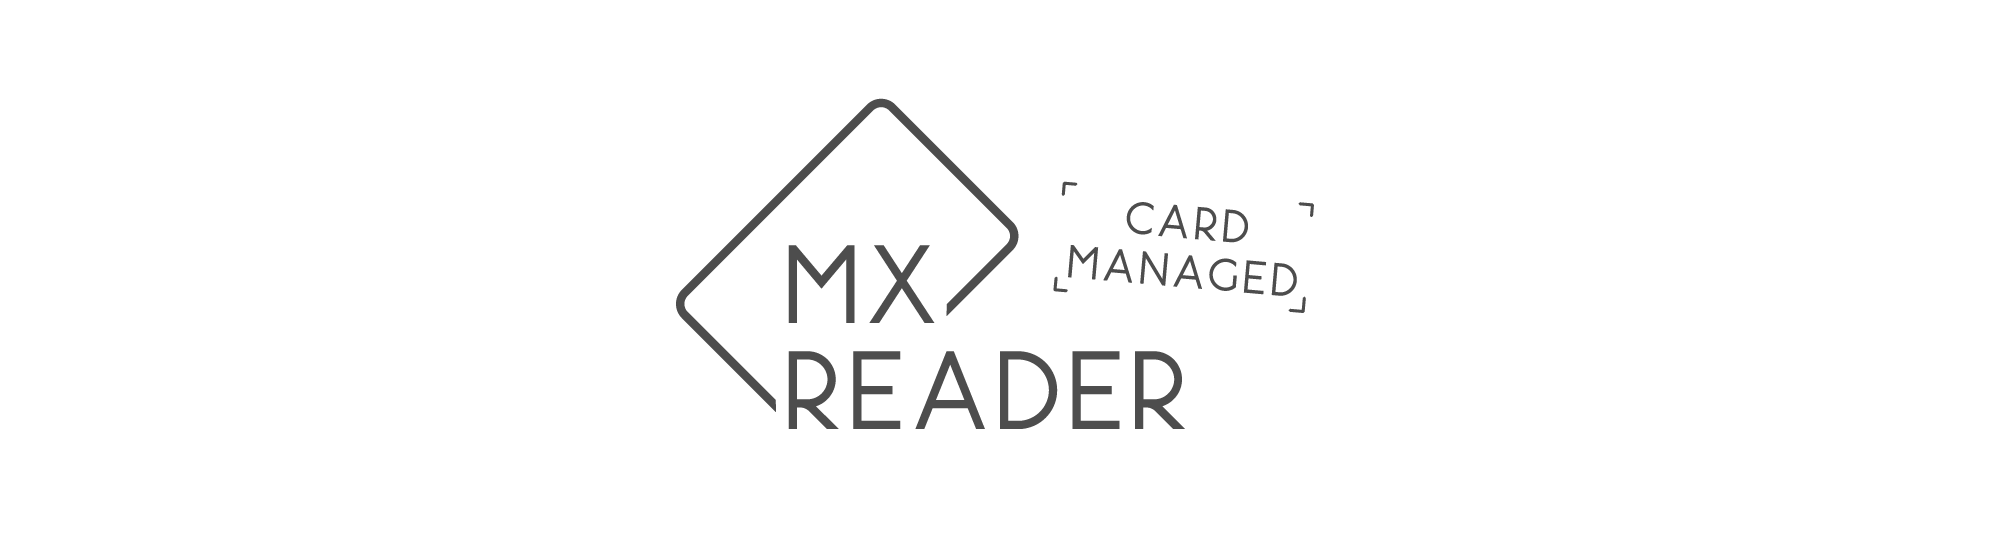 MXreader card managed